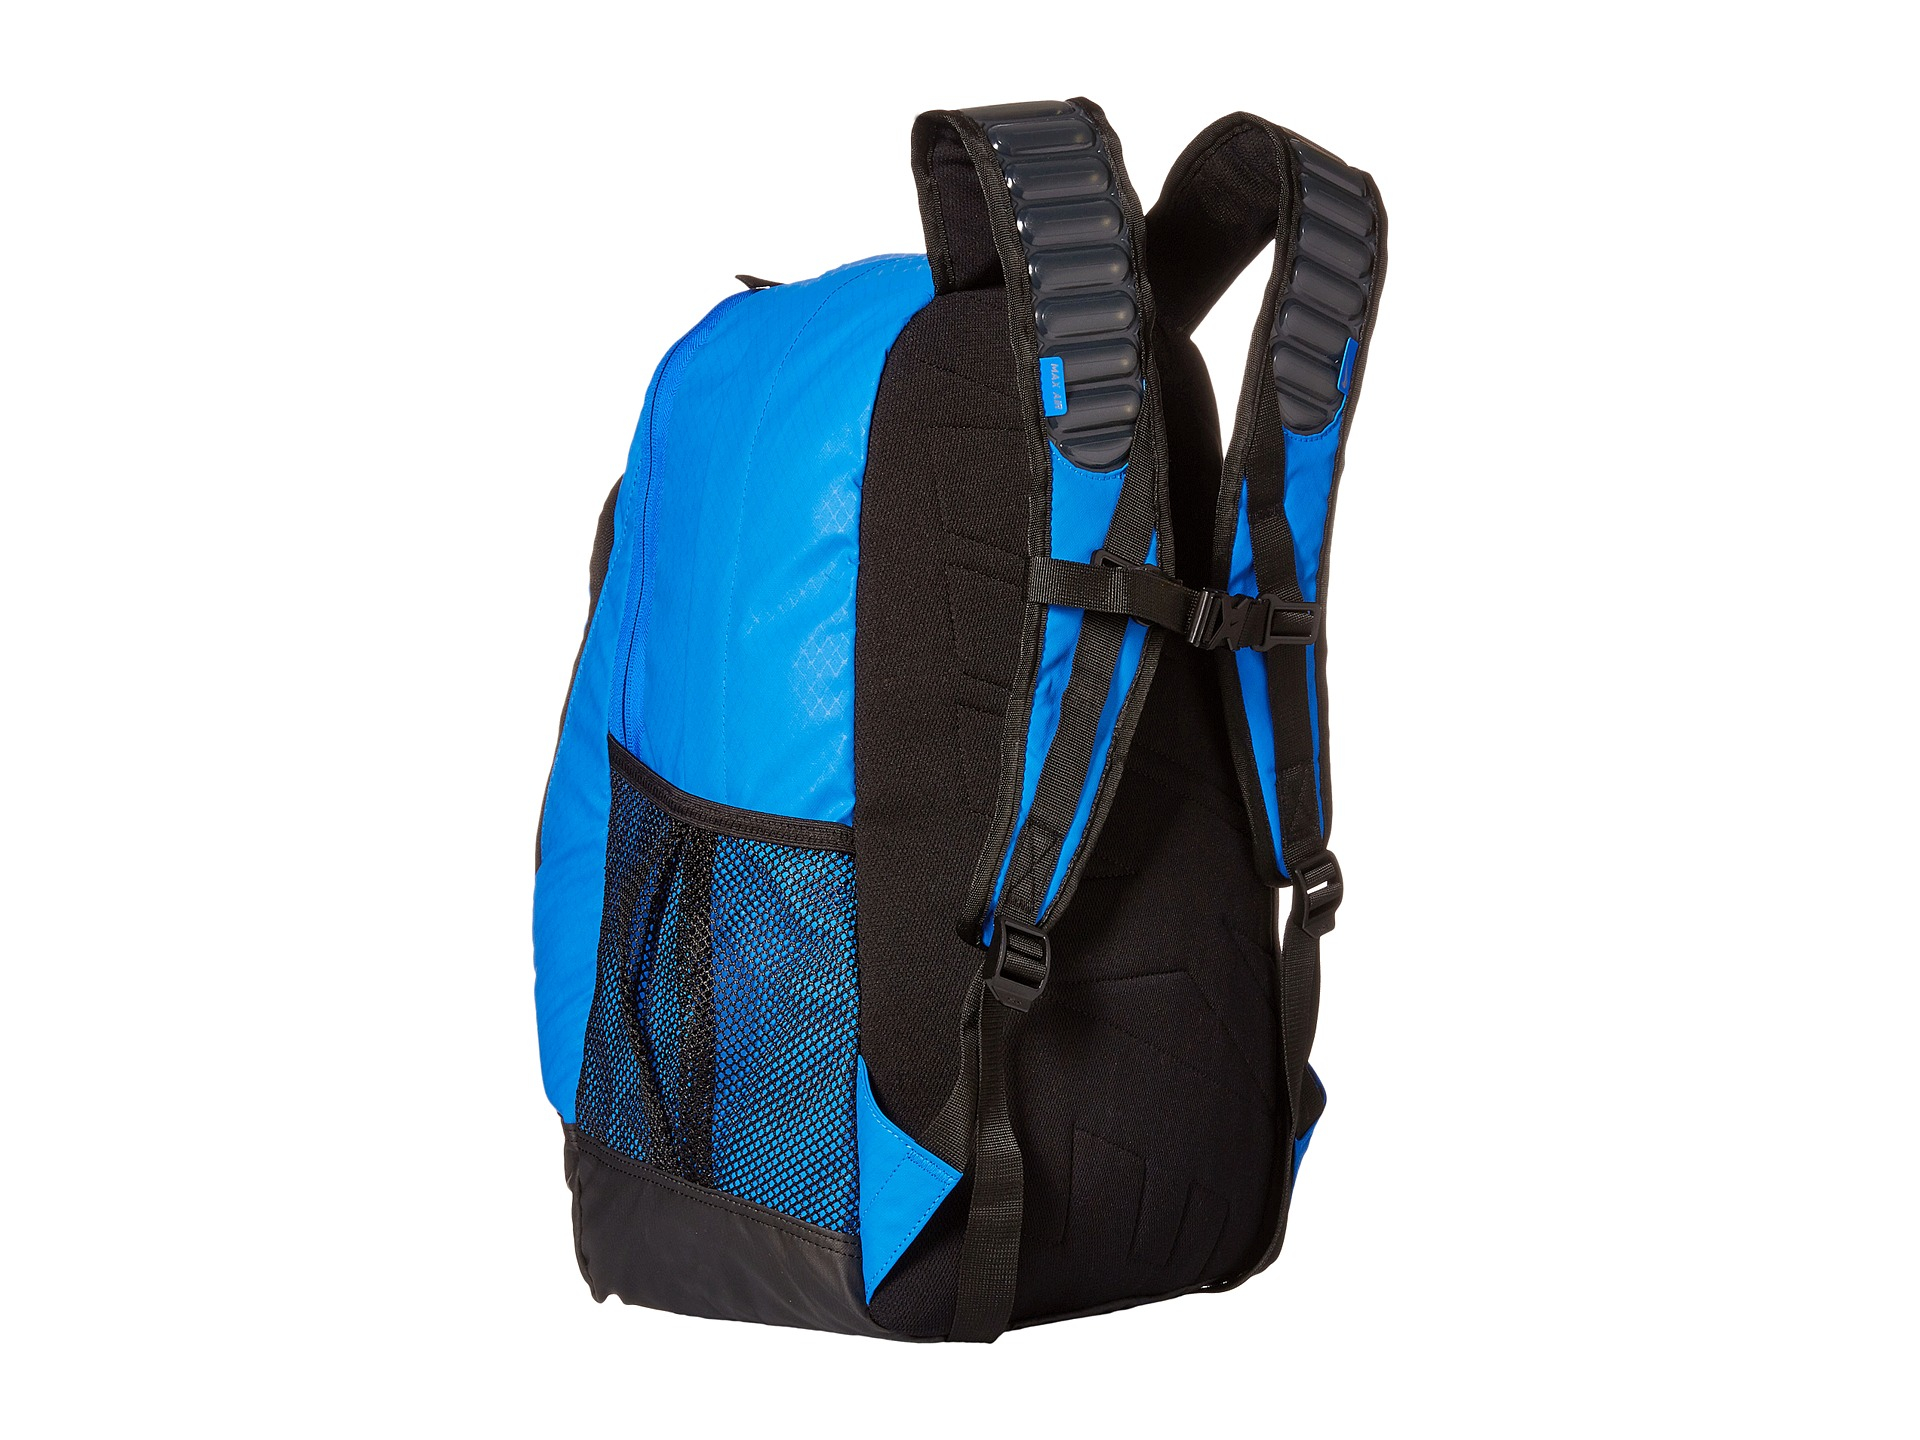 nike vapor backpack 2015